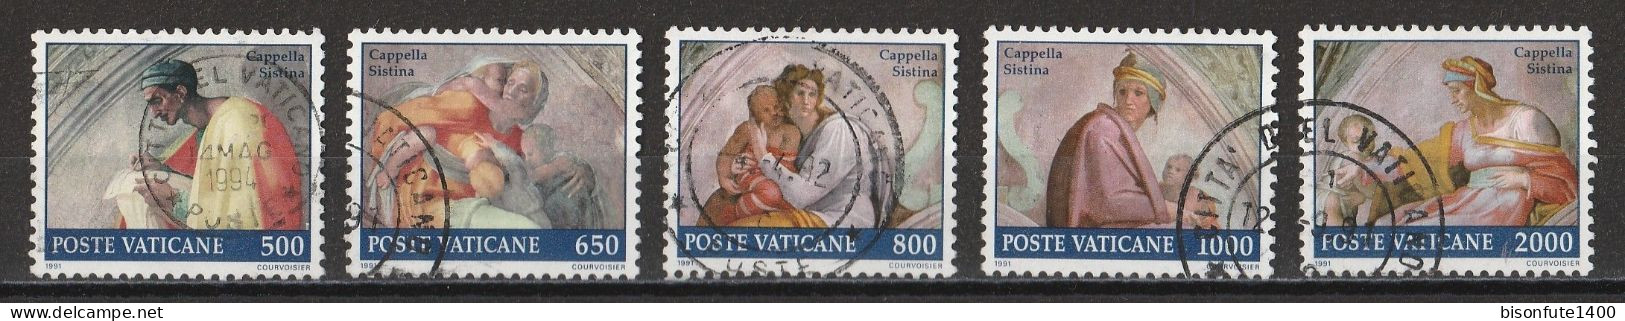 Vatican 1991 : Timbres Yvert & Tellier N° 891 - 892 - 893 - 894 - 895 - 897 - 898 - 899 - 900 Et 901 Oblitérés. - Oblitérés